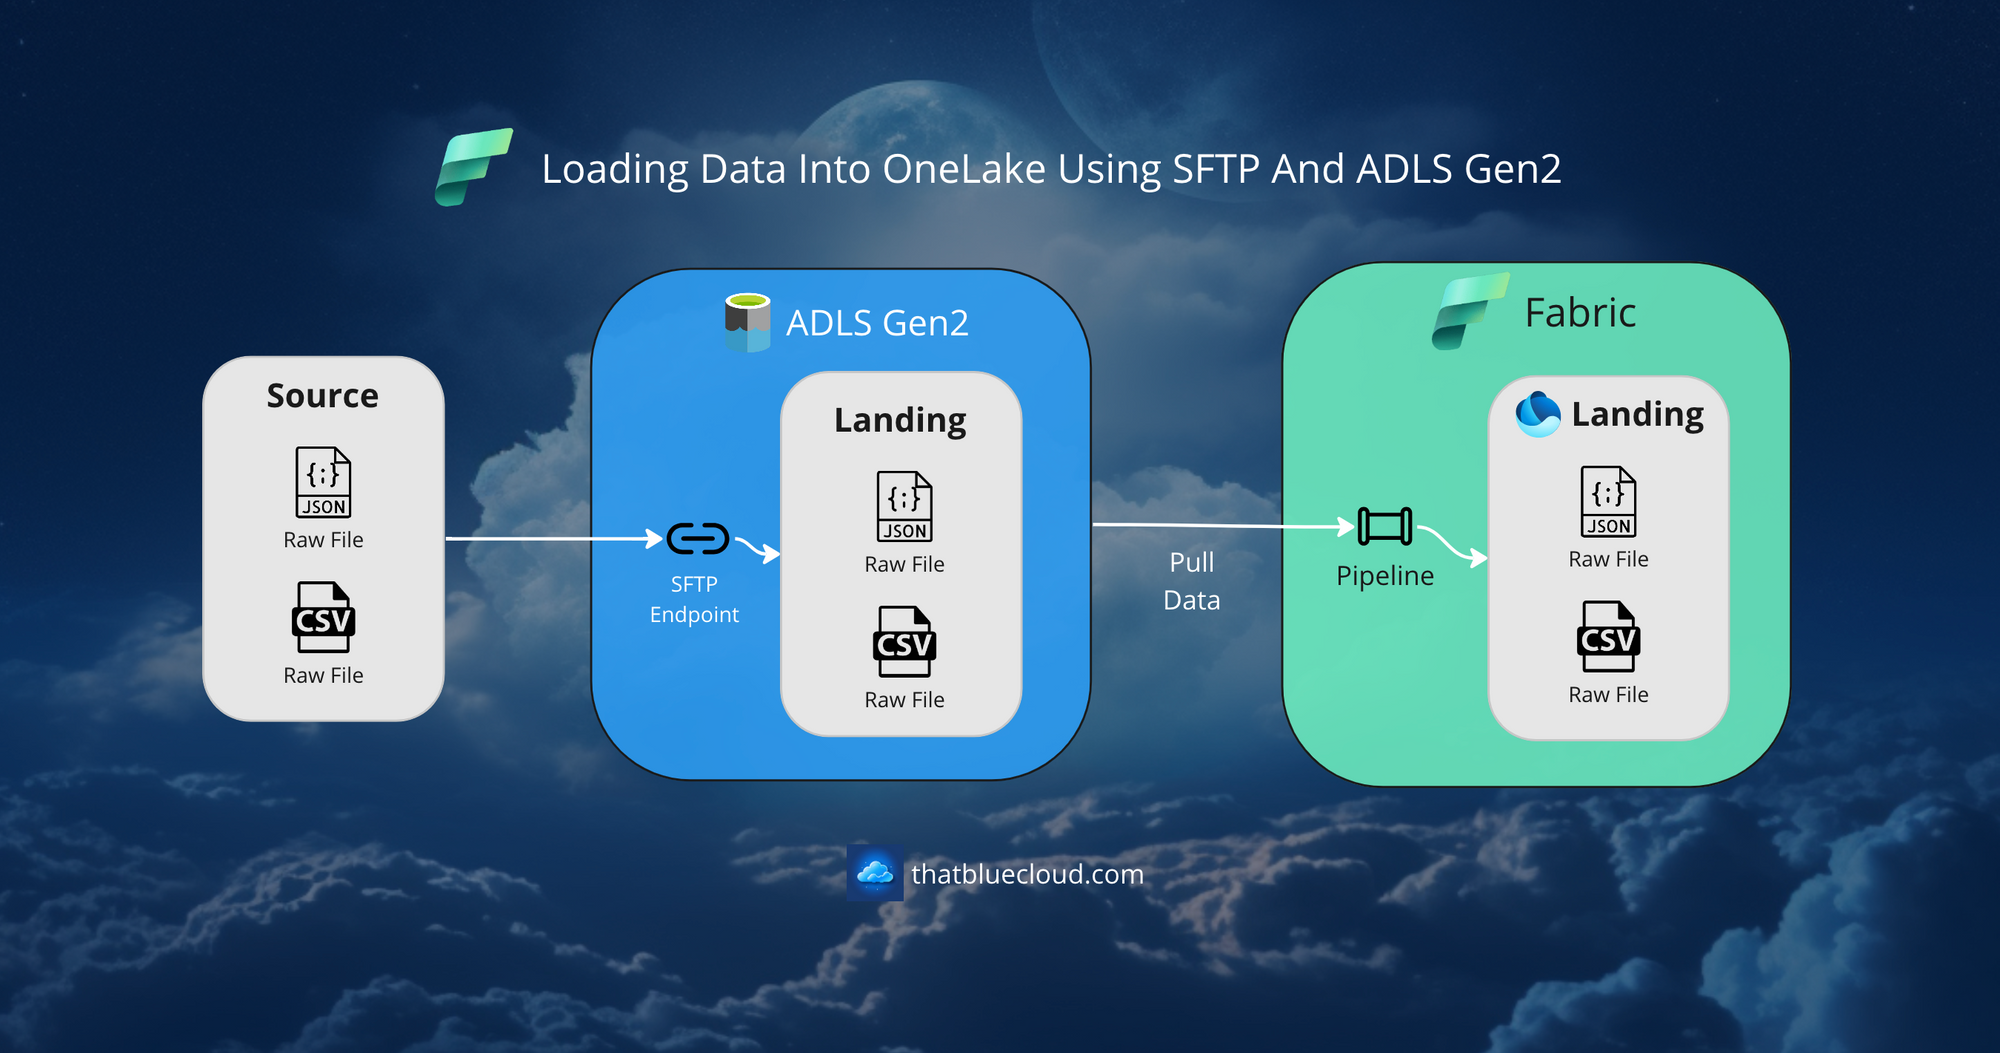 Loading Data Into OneLake via ADLS Gen2 SFTP